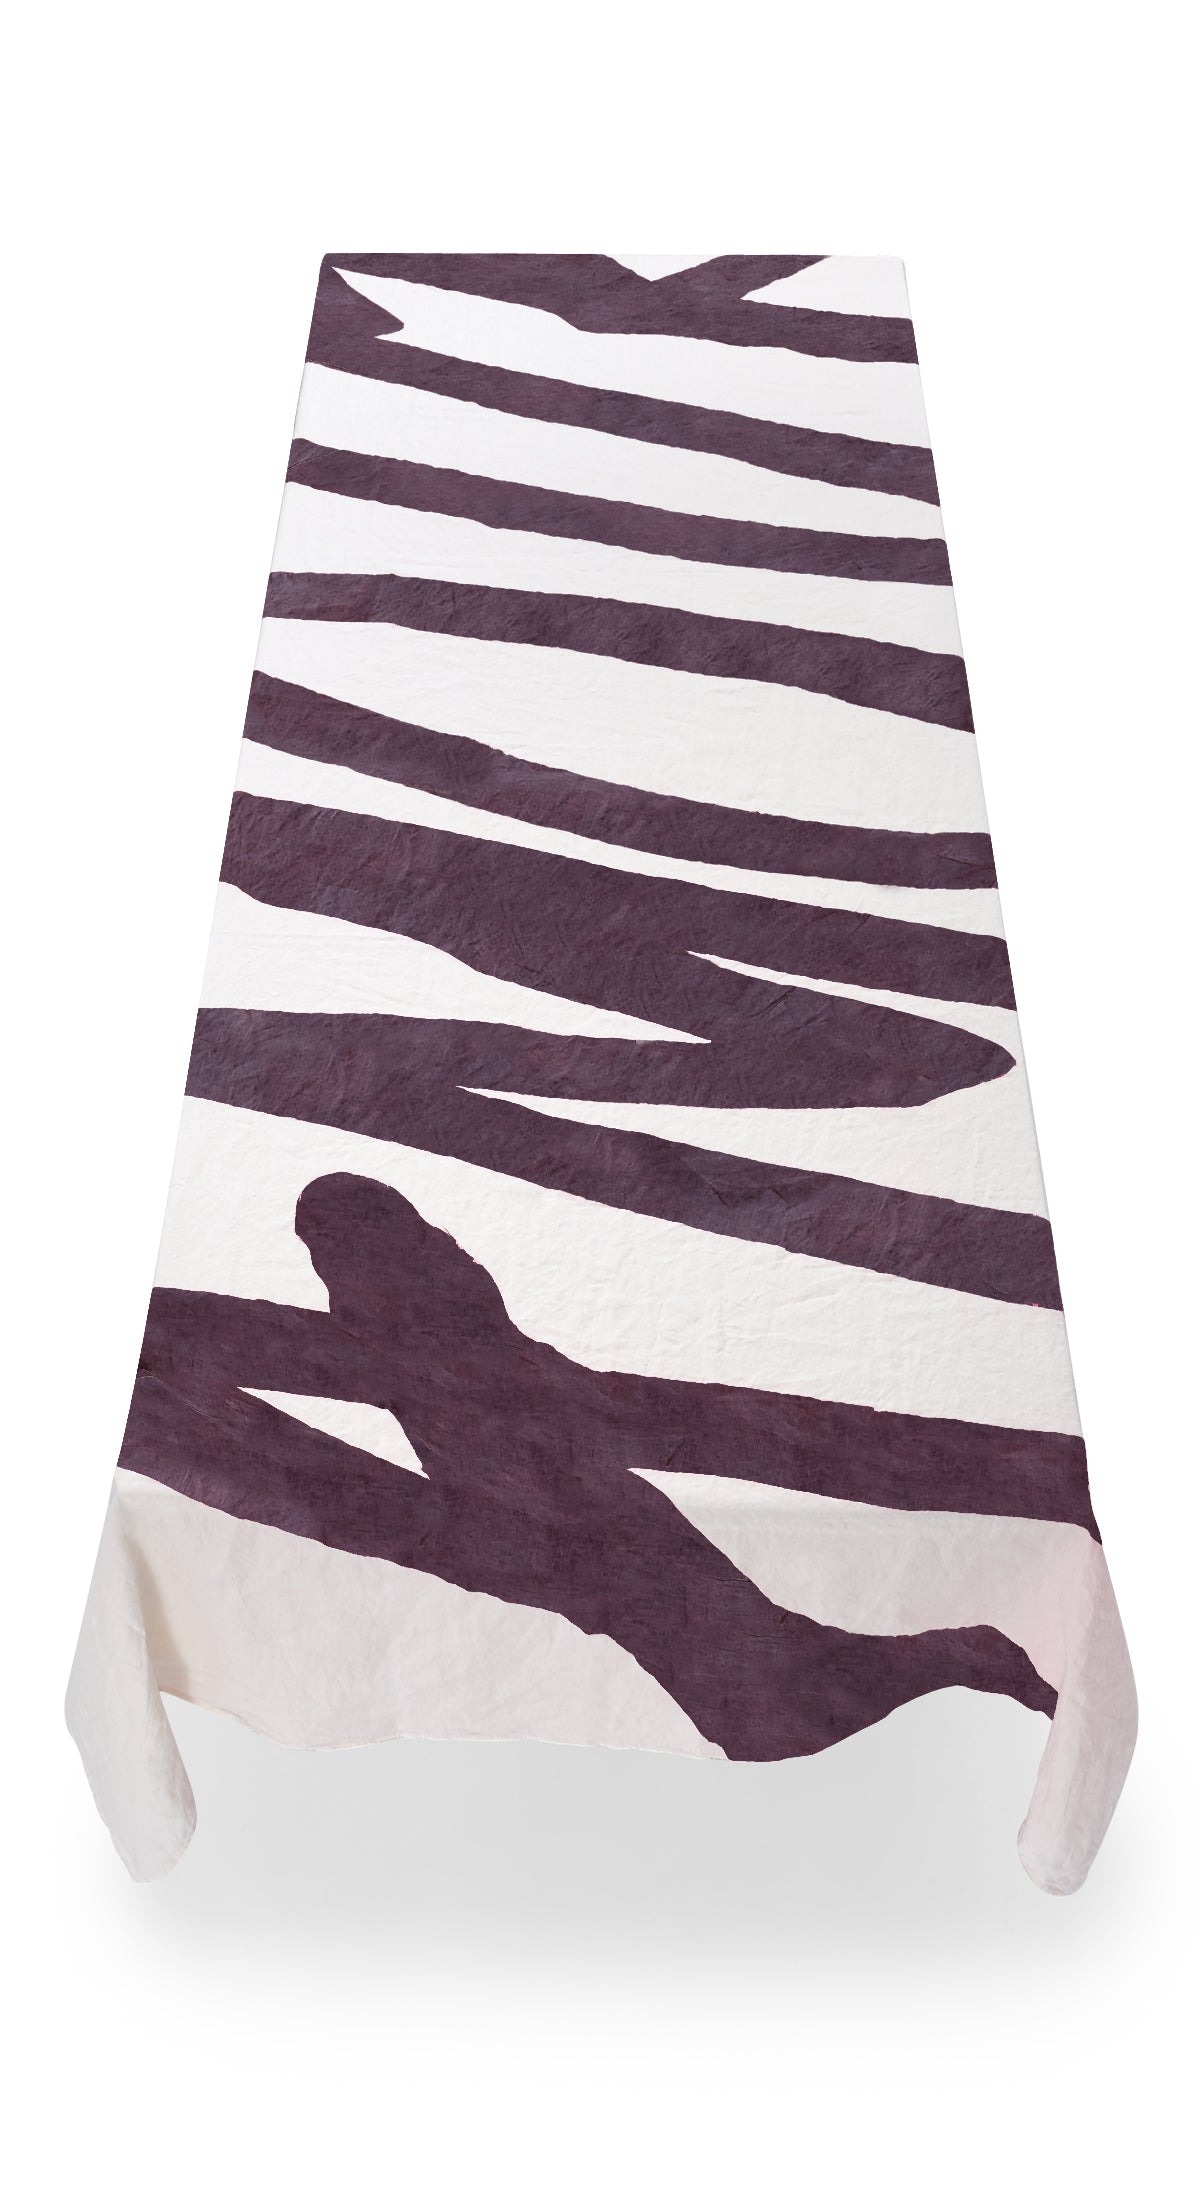 Bespoke Word Linen Tablecloth in Grape Purple